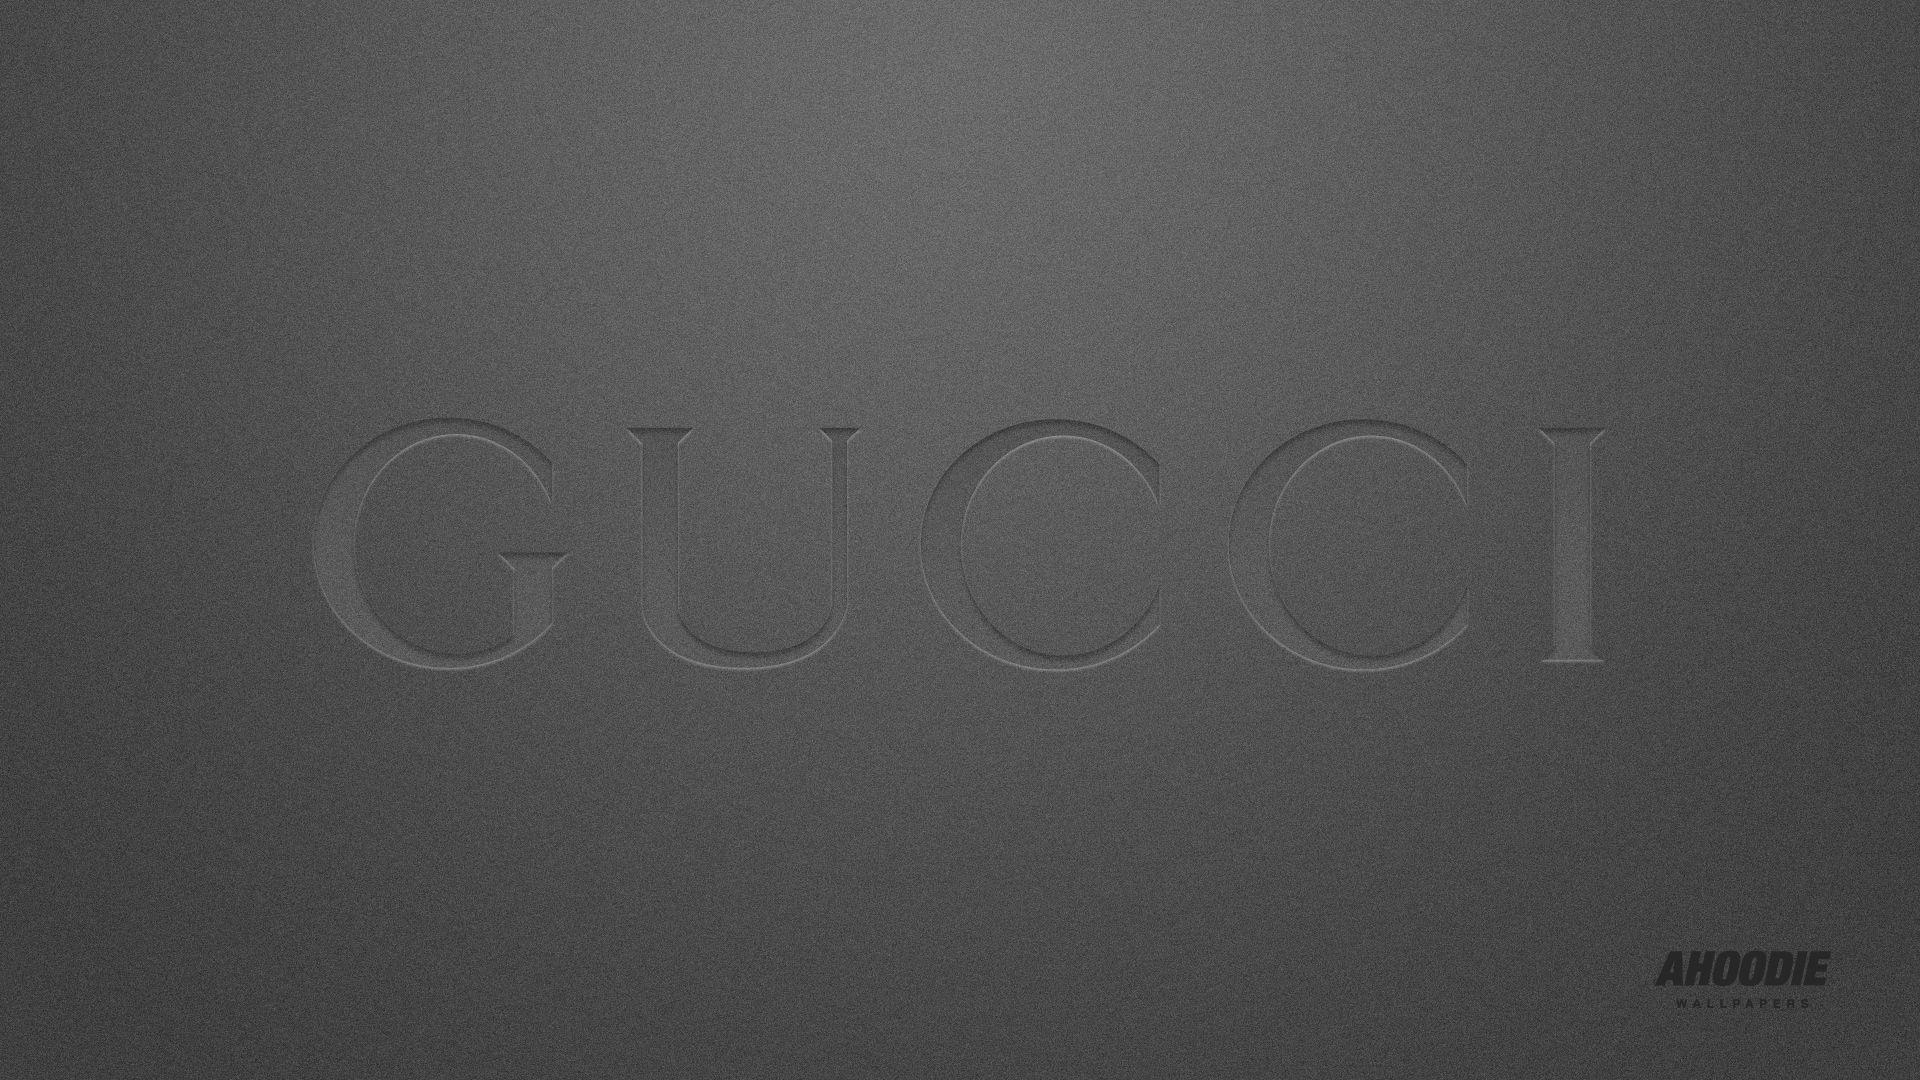 گوچی (Gucci)